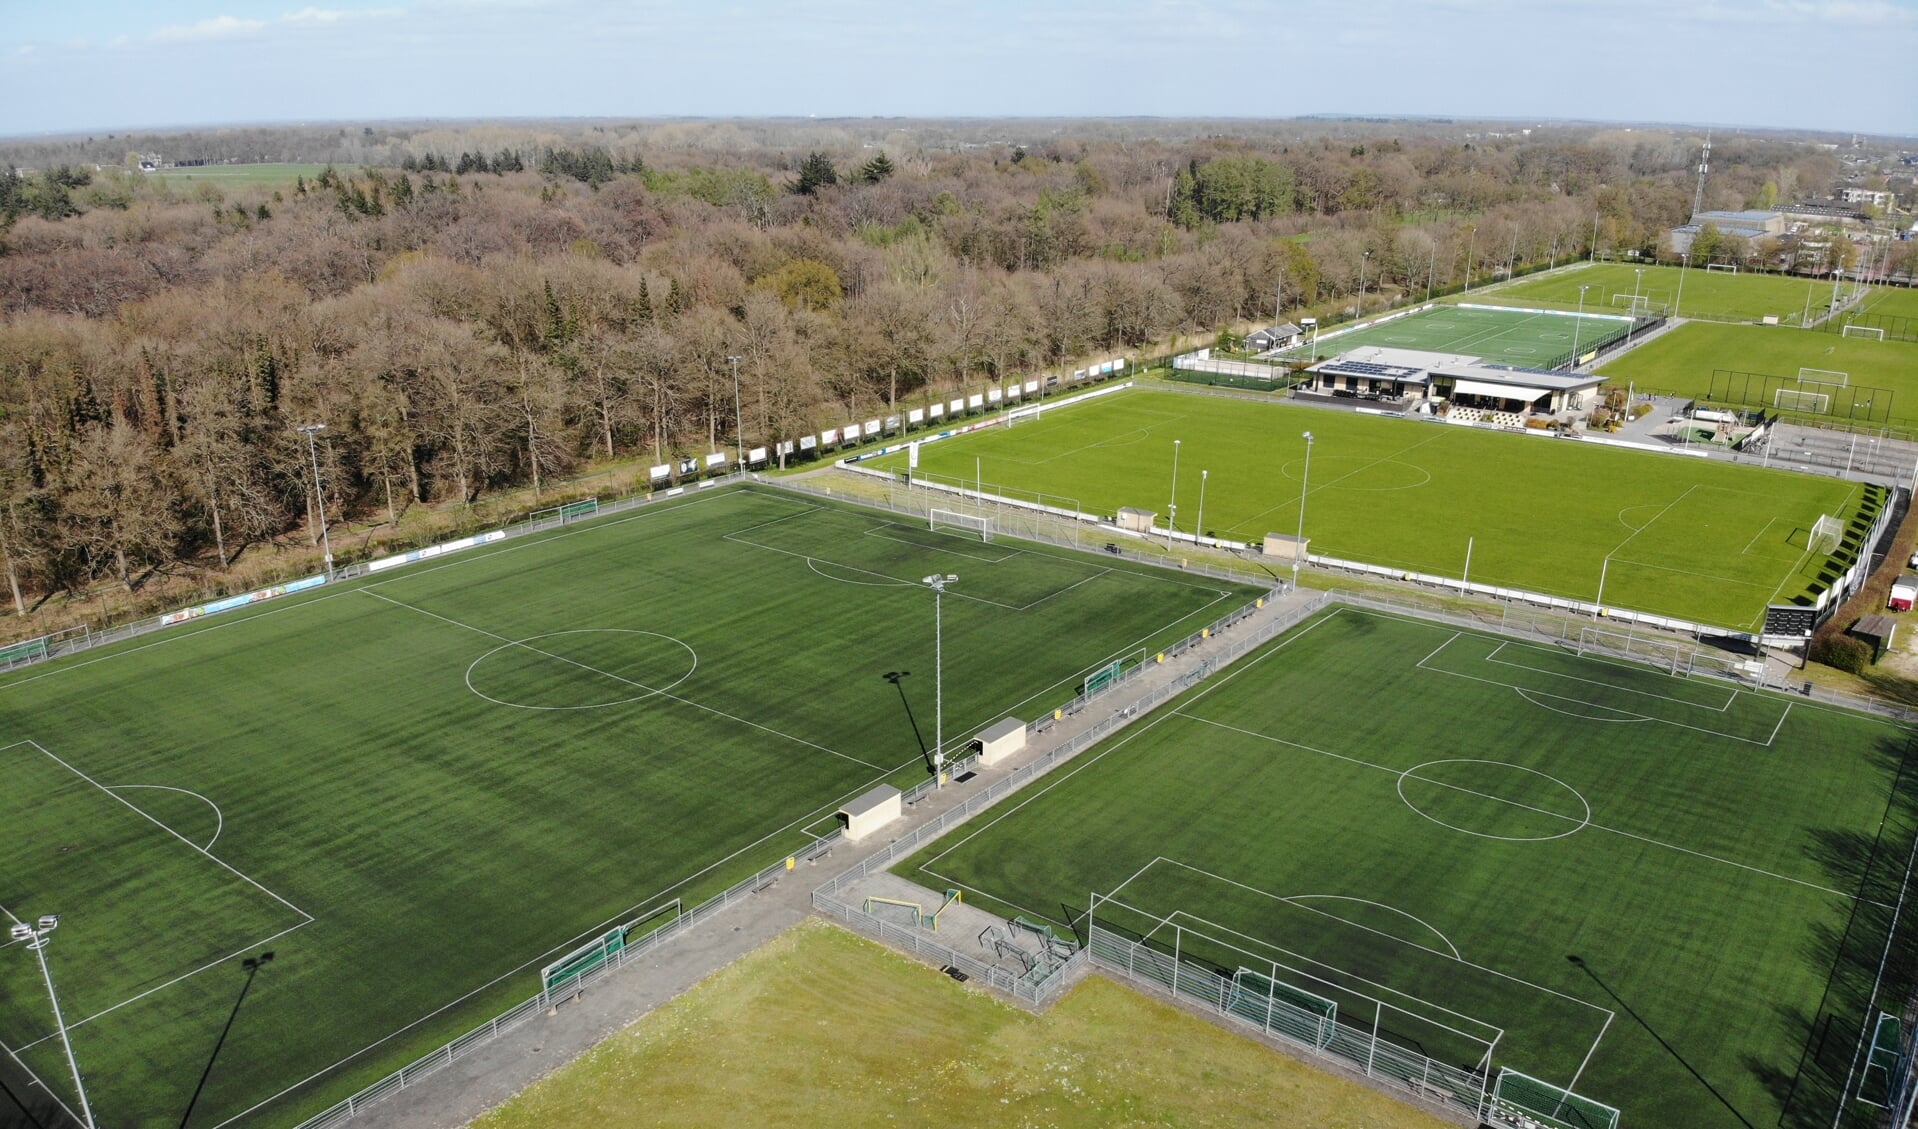 Het toernooi wordt gespeeld op sportpark De Grift.